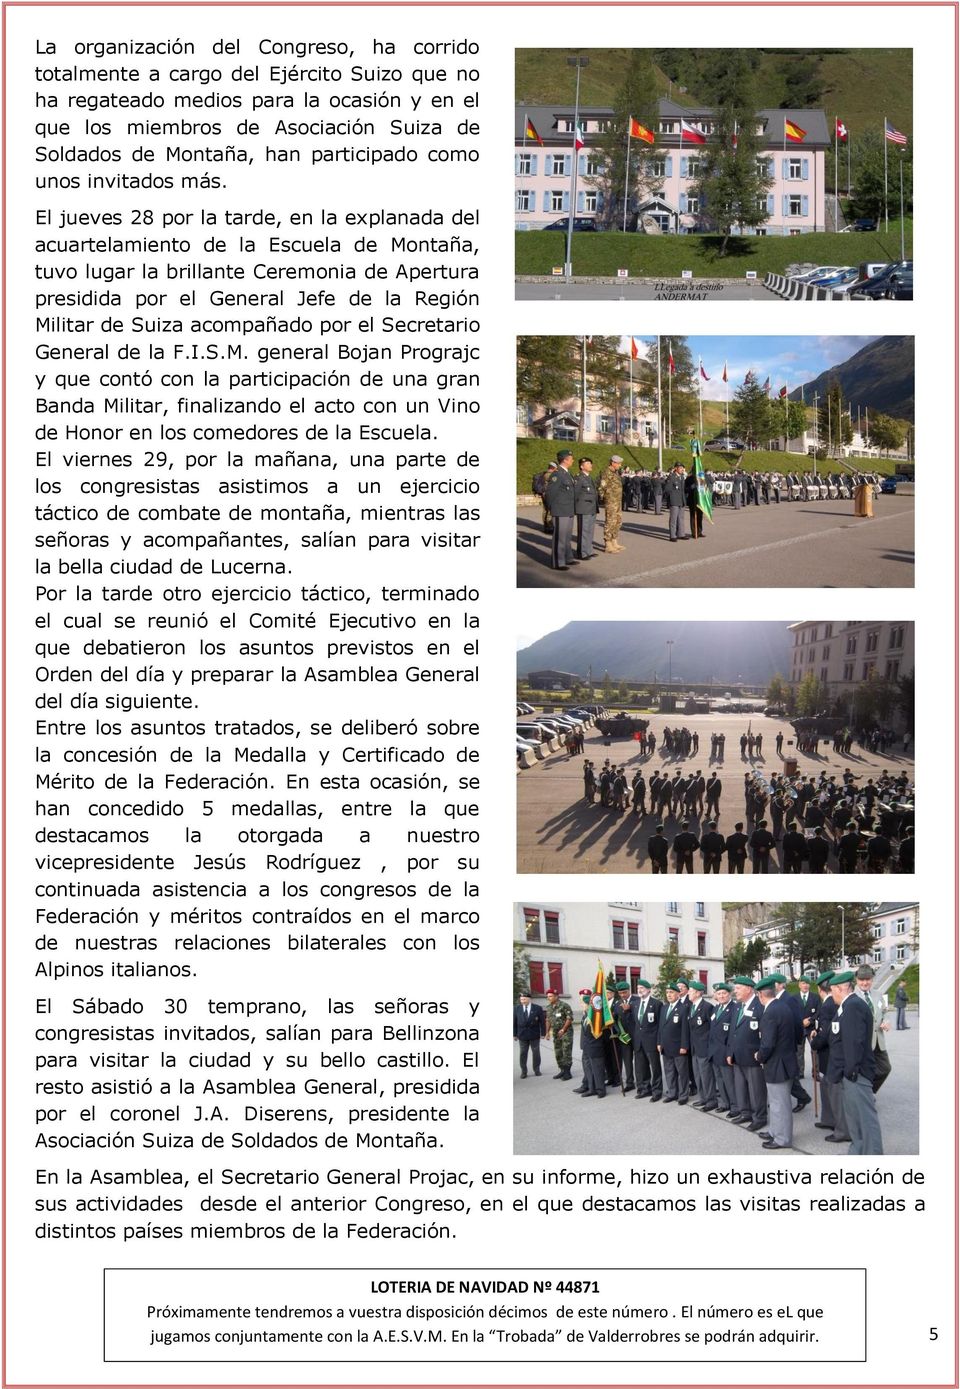 El jueves 28 por la tarde, en la explanada del acuartelamiento de la Escuela de Montaña, tuvo lugar la brillante Ceremonia de Apertura presidida por el General Jefe de la Región Militar de Suiza